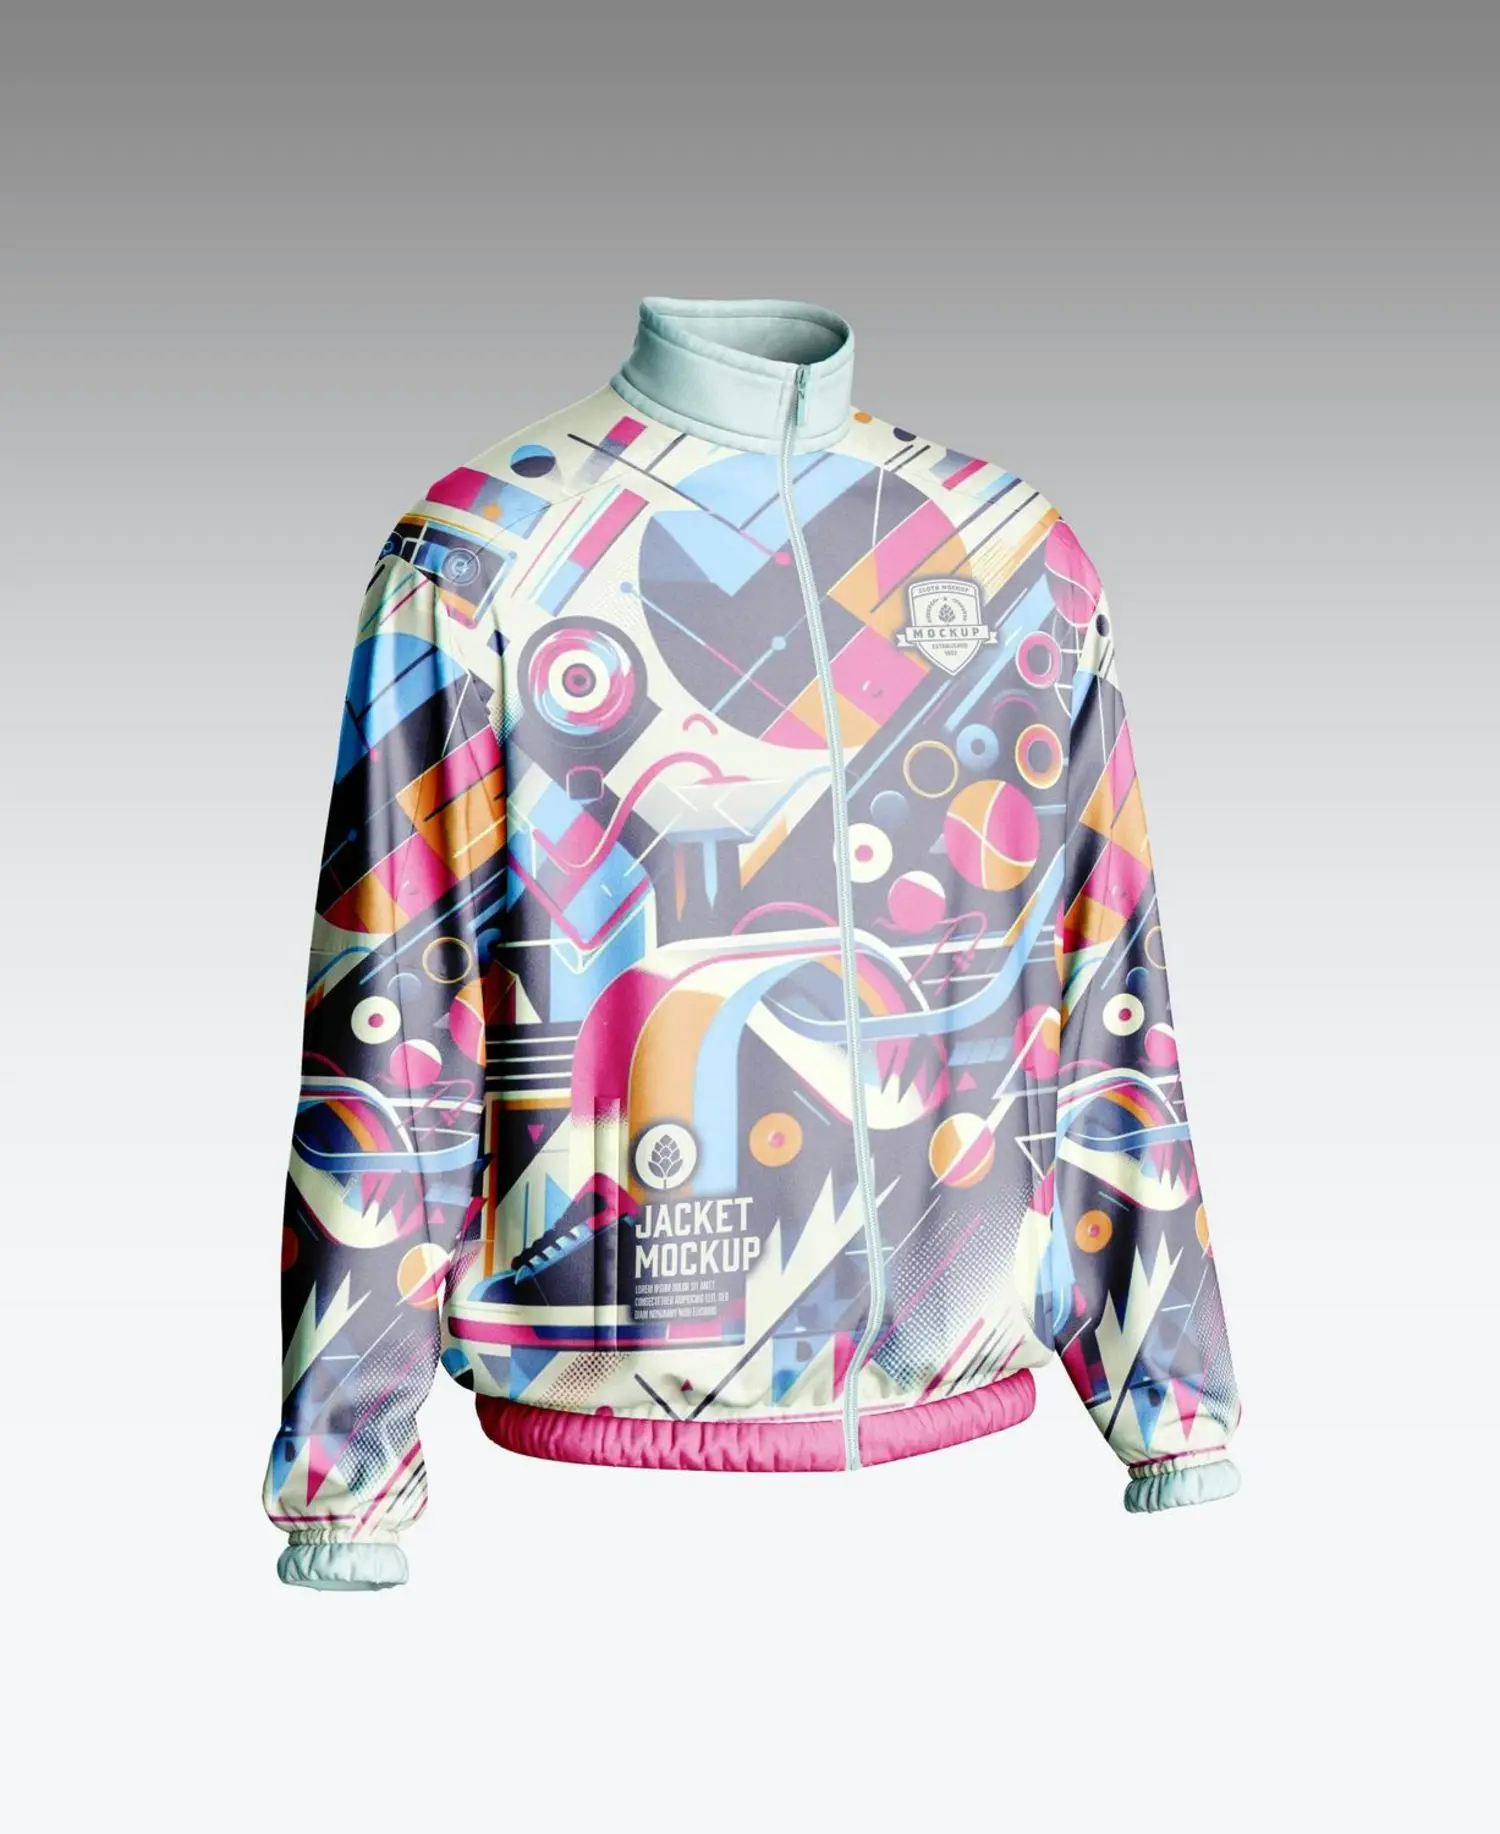 6172 炫酷时尚创意设计运动夹克样机-sport-jacket-mockup